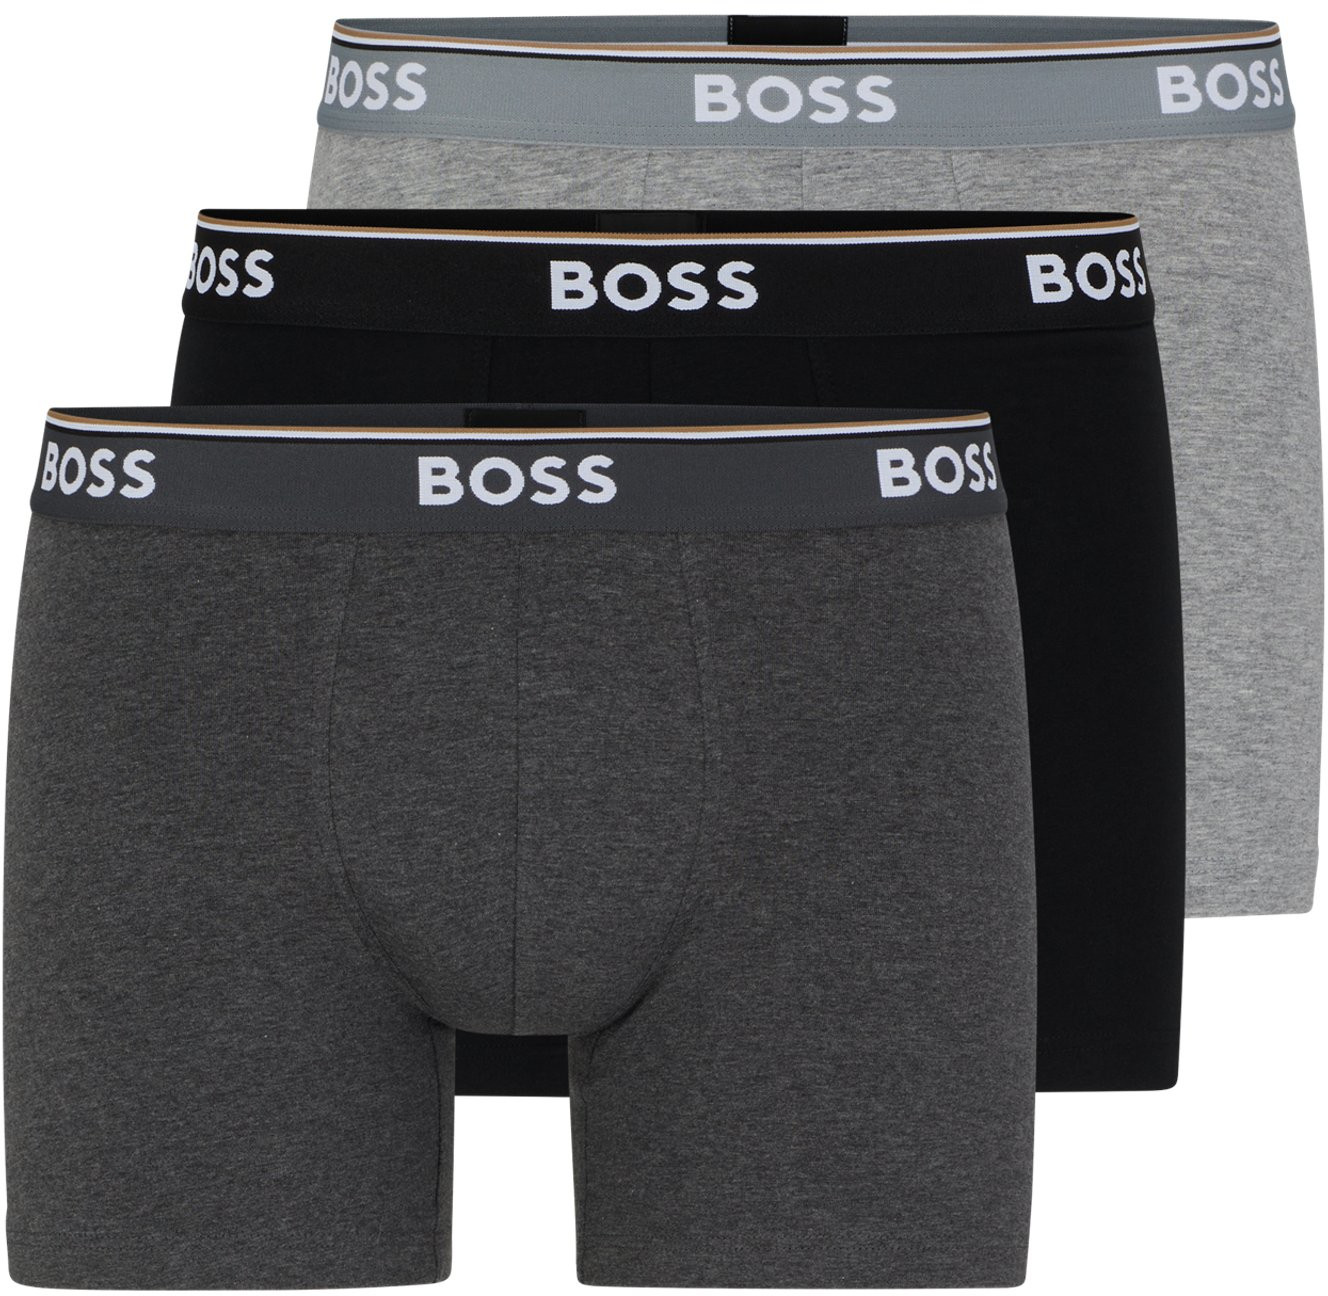 Hugo Boss 3 PACK - pánske boxerky BOSS 50475282-061 M